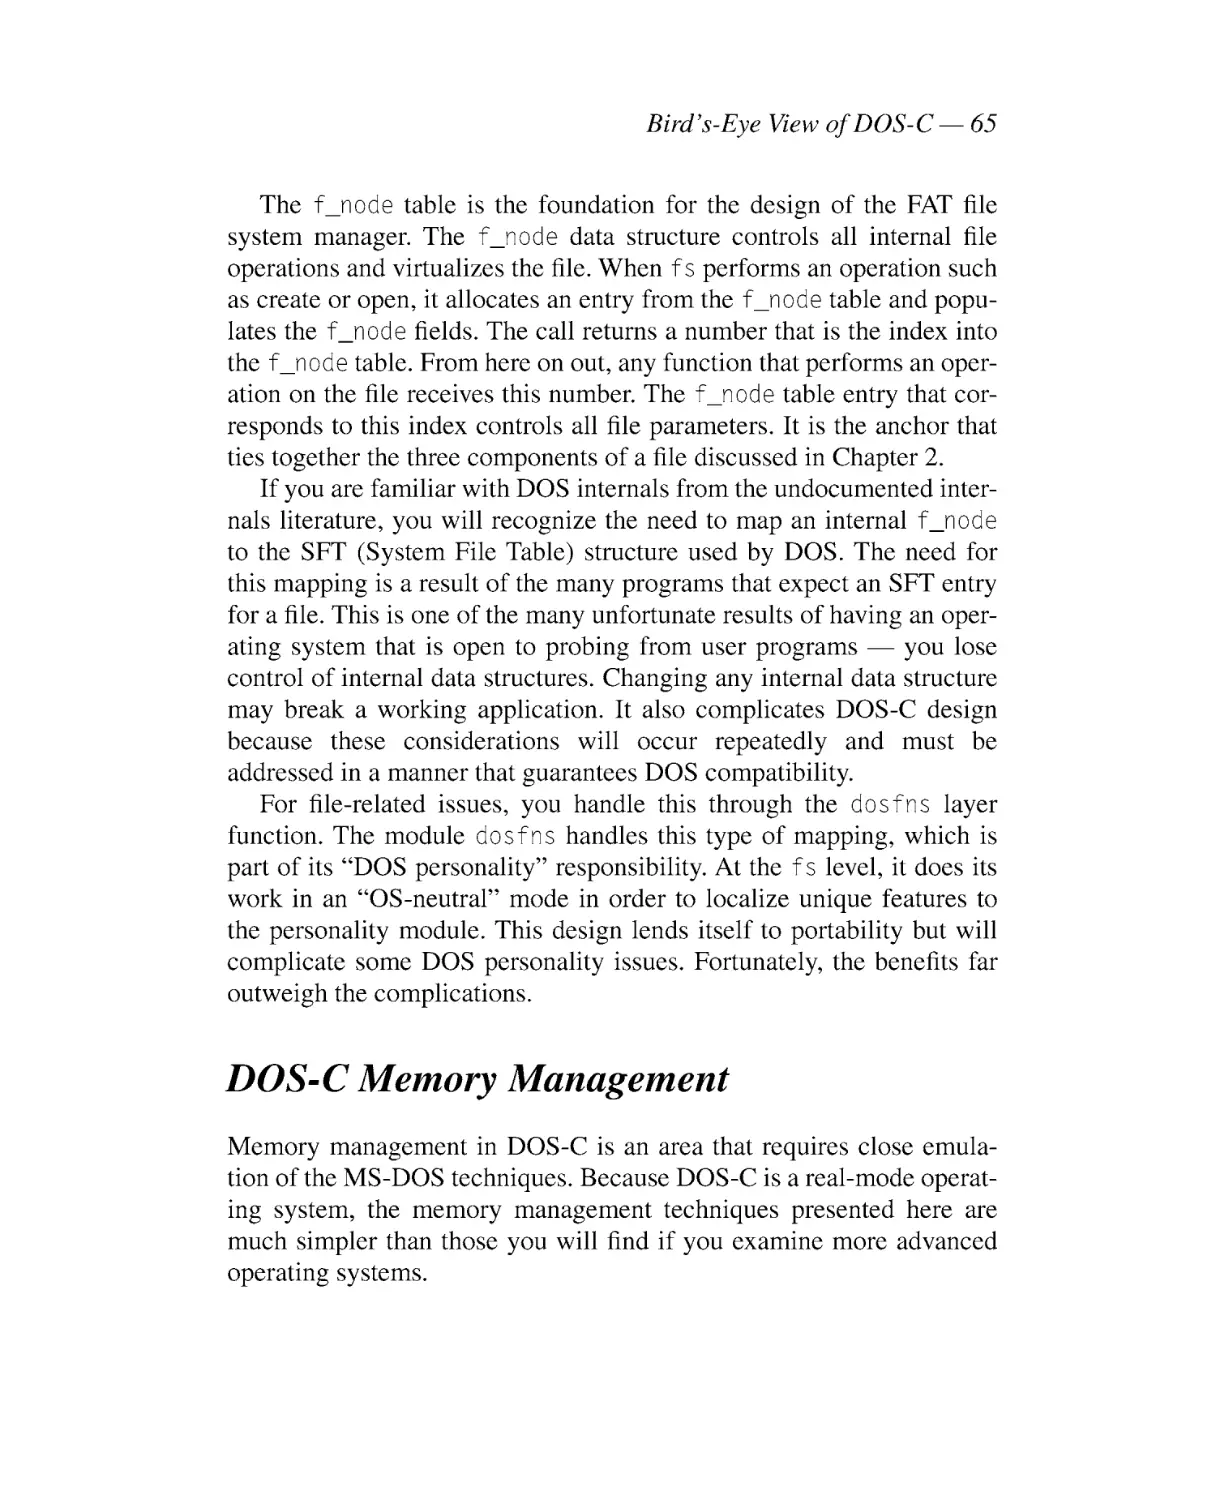 DOS-C Memory Management